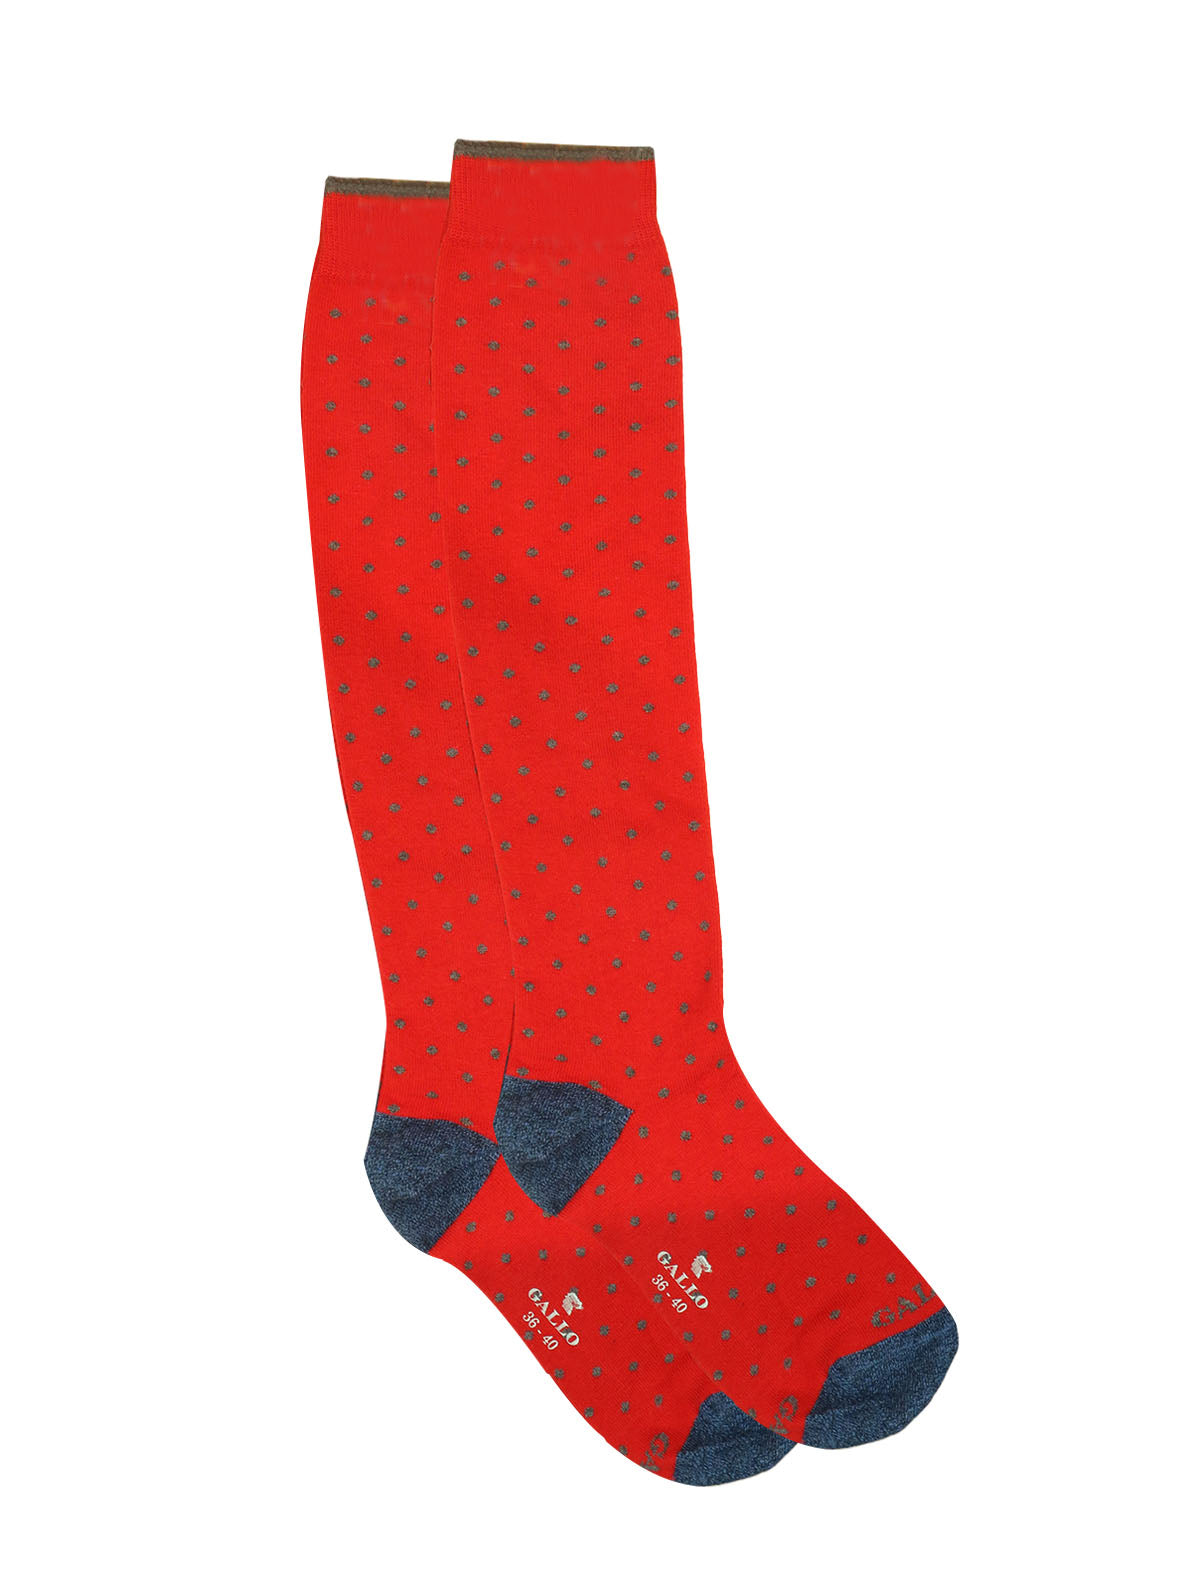 Gallo Long Socks in Red Polka Dot Print